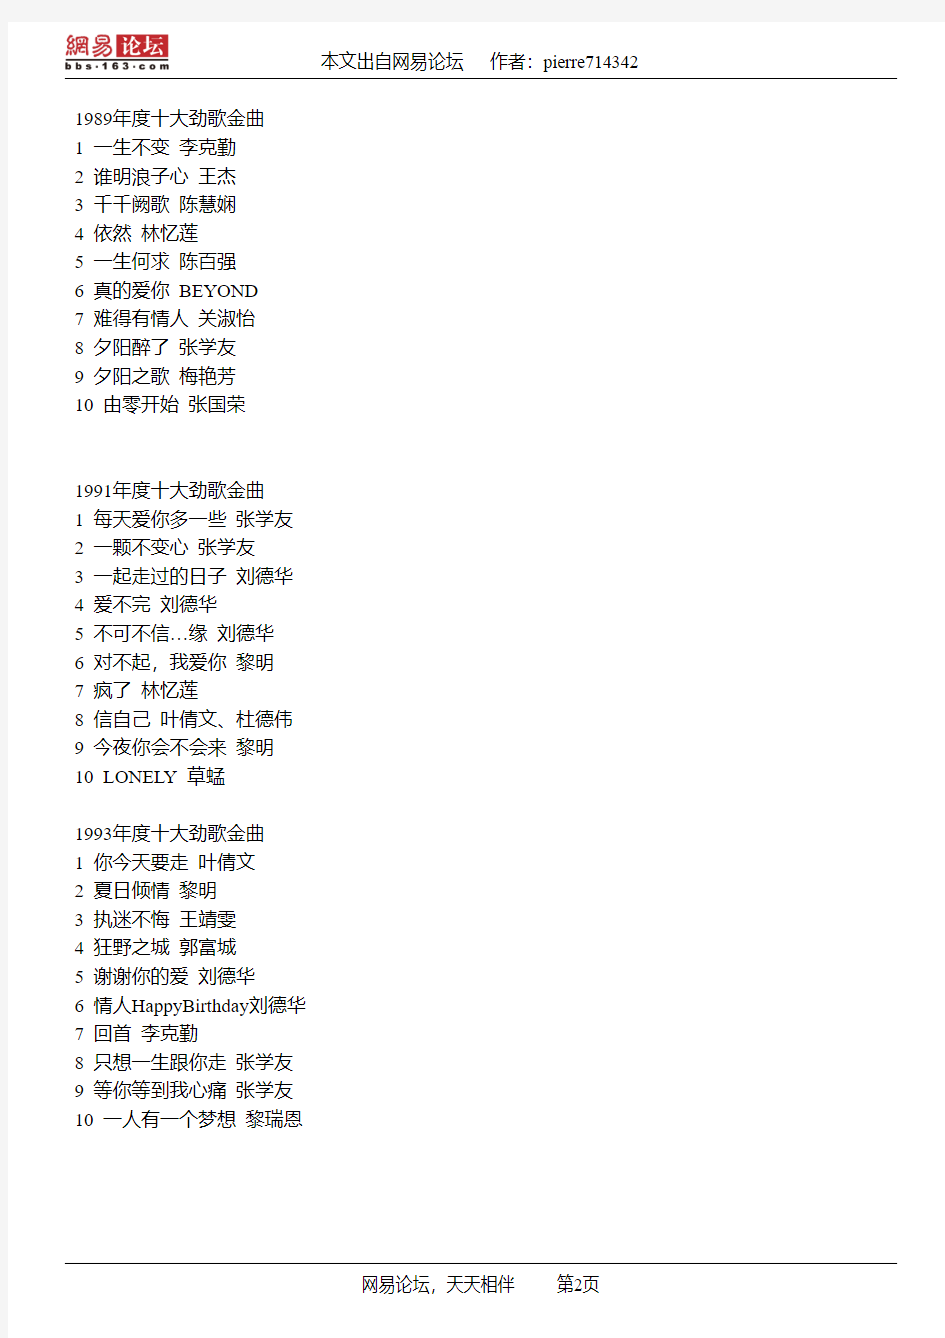 转贴1983-1996年度香港无线电视台十大劲歌金曲名单,香港历届十大中文